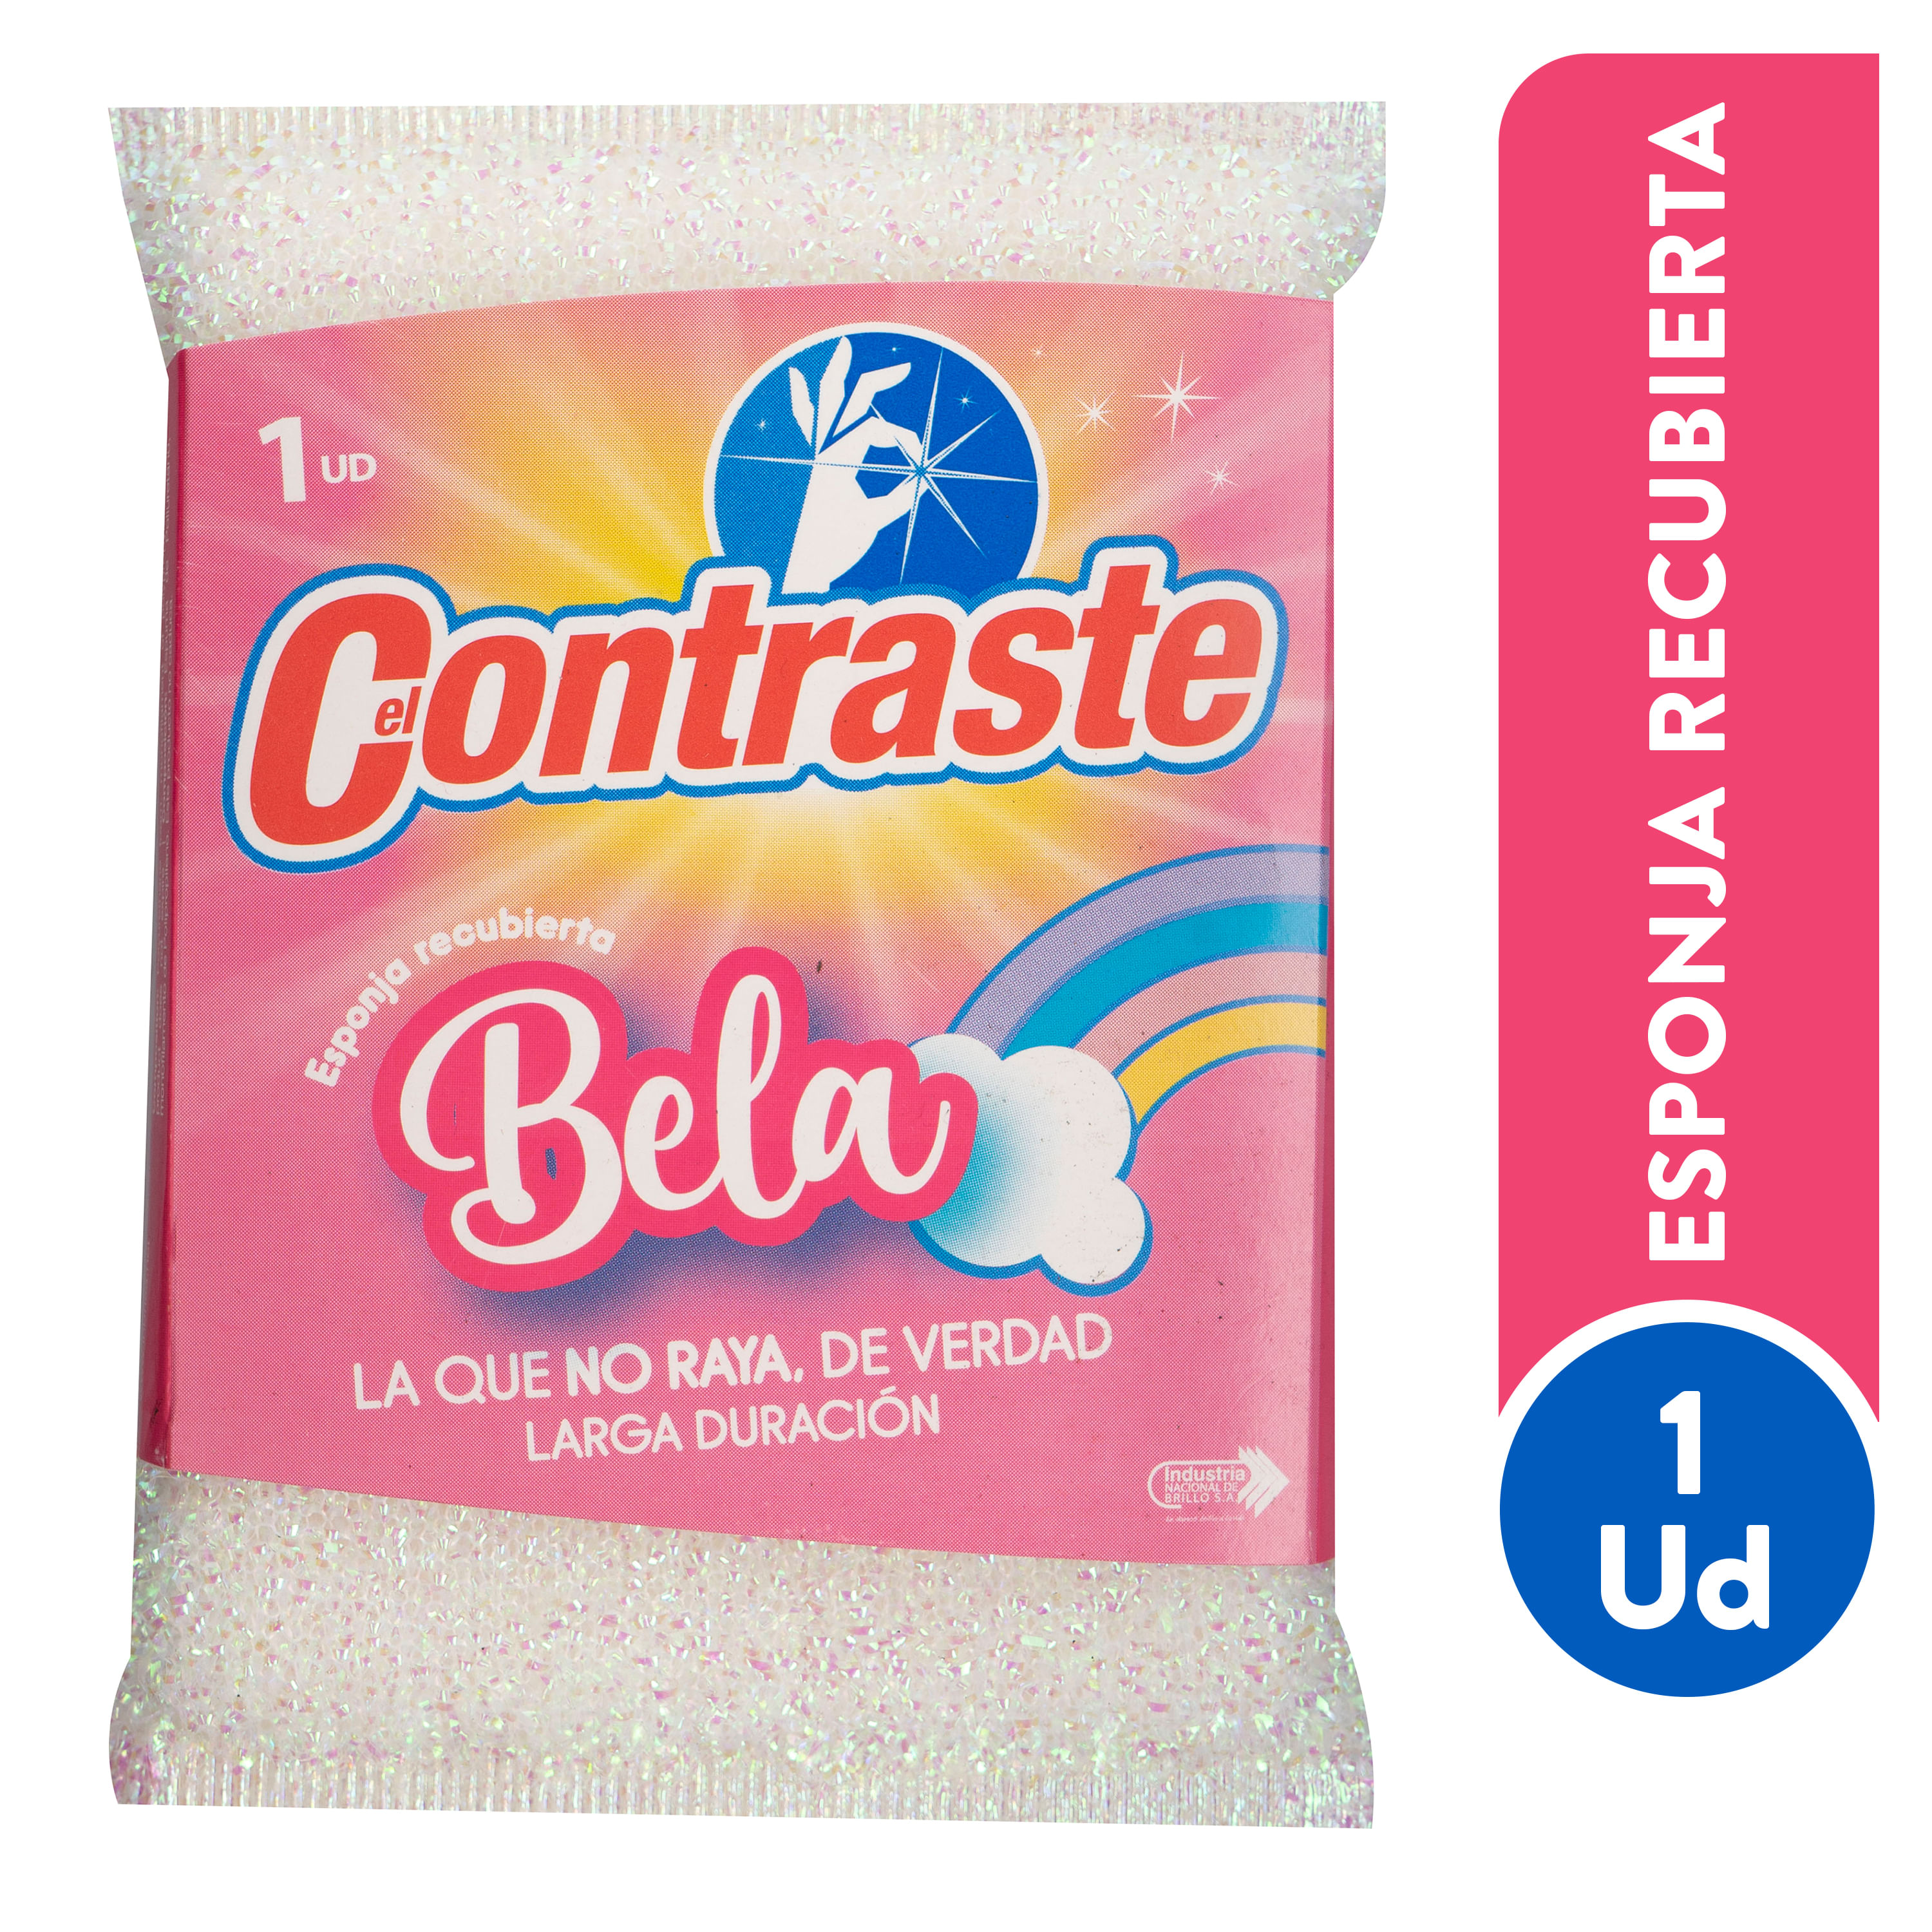 Comprar Esponja El Contraste Bela Multiuso, Walmart Costa Rica - Maxi Palí